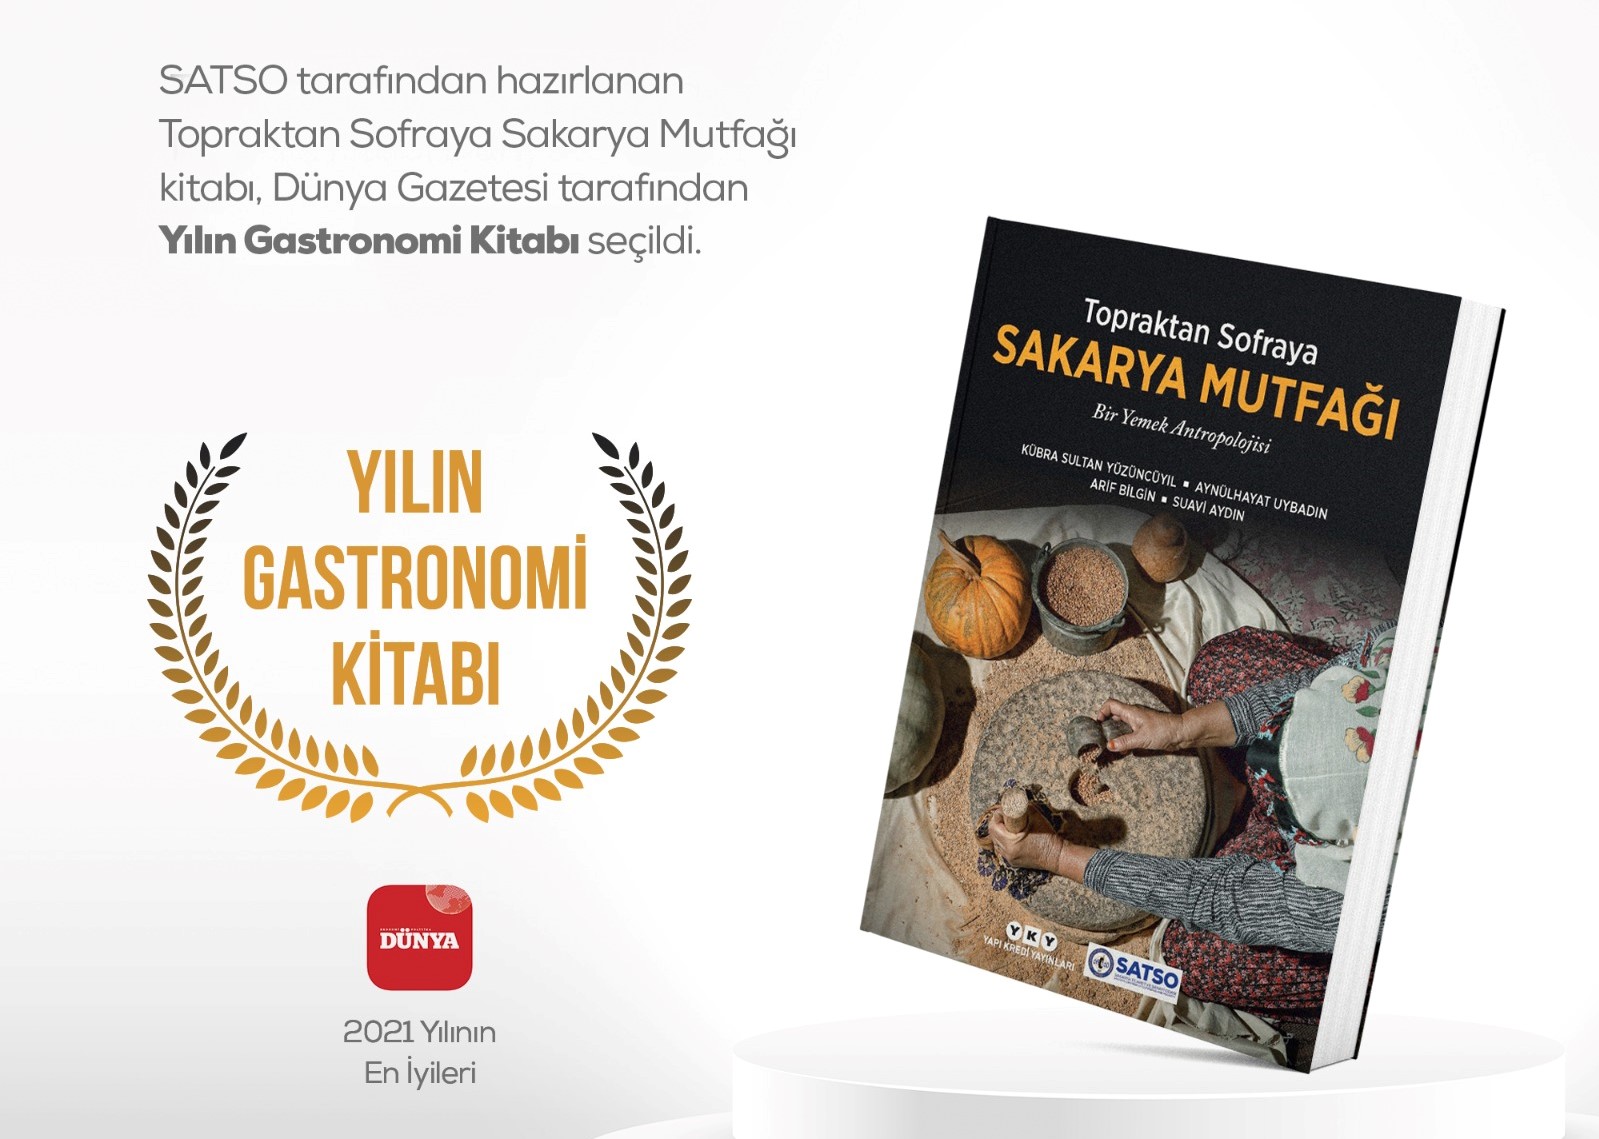 Yılın Gastronomi Kitabı Seçildi!